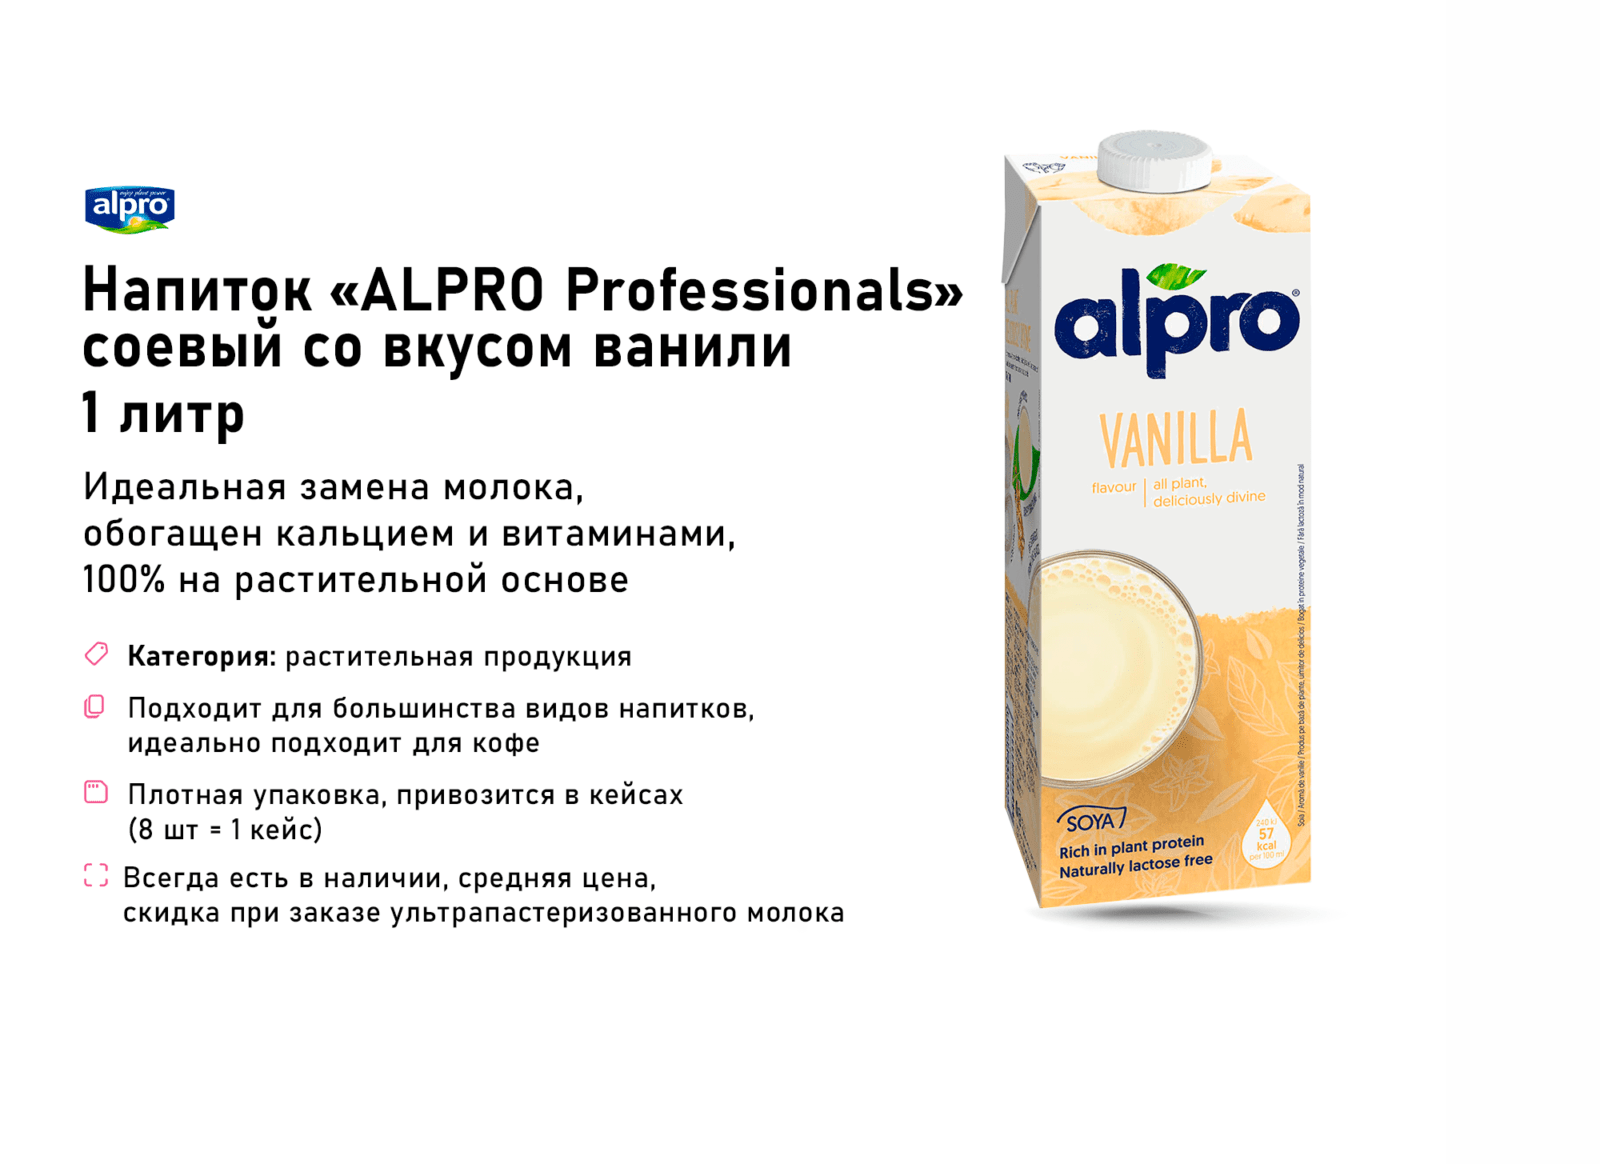 17 Напиток Alpro соевый со вкусом ванили